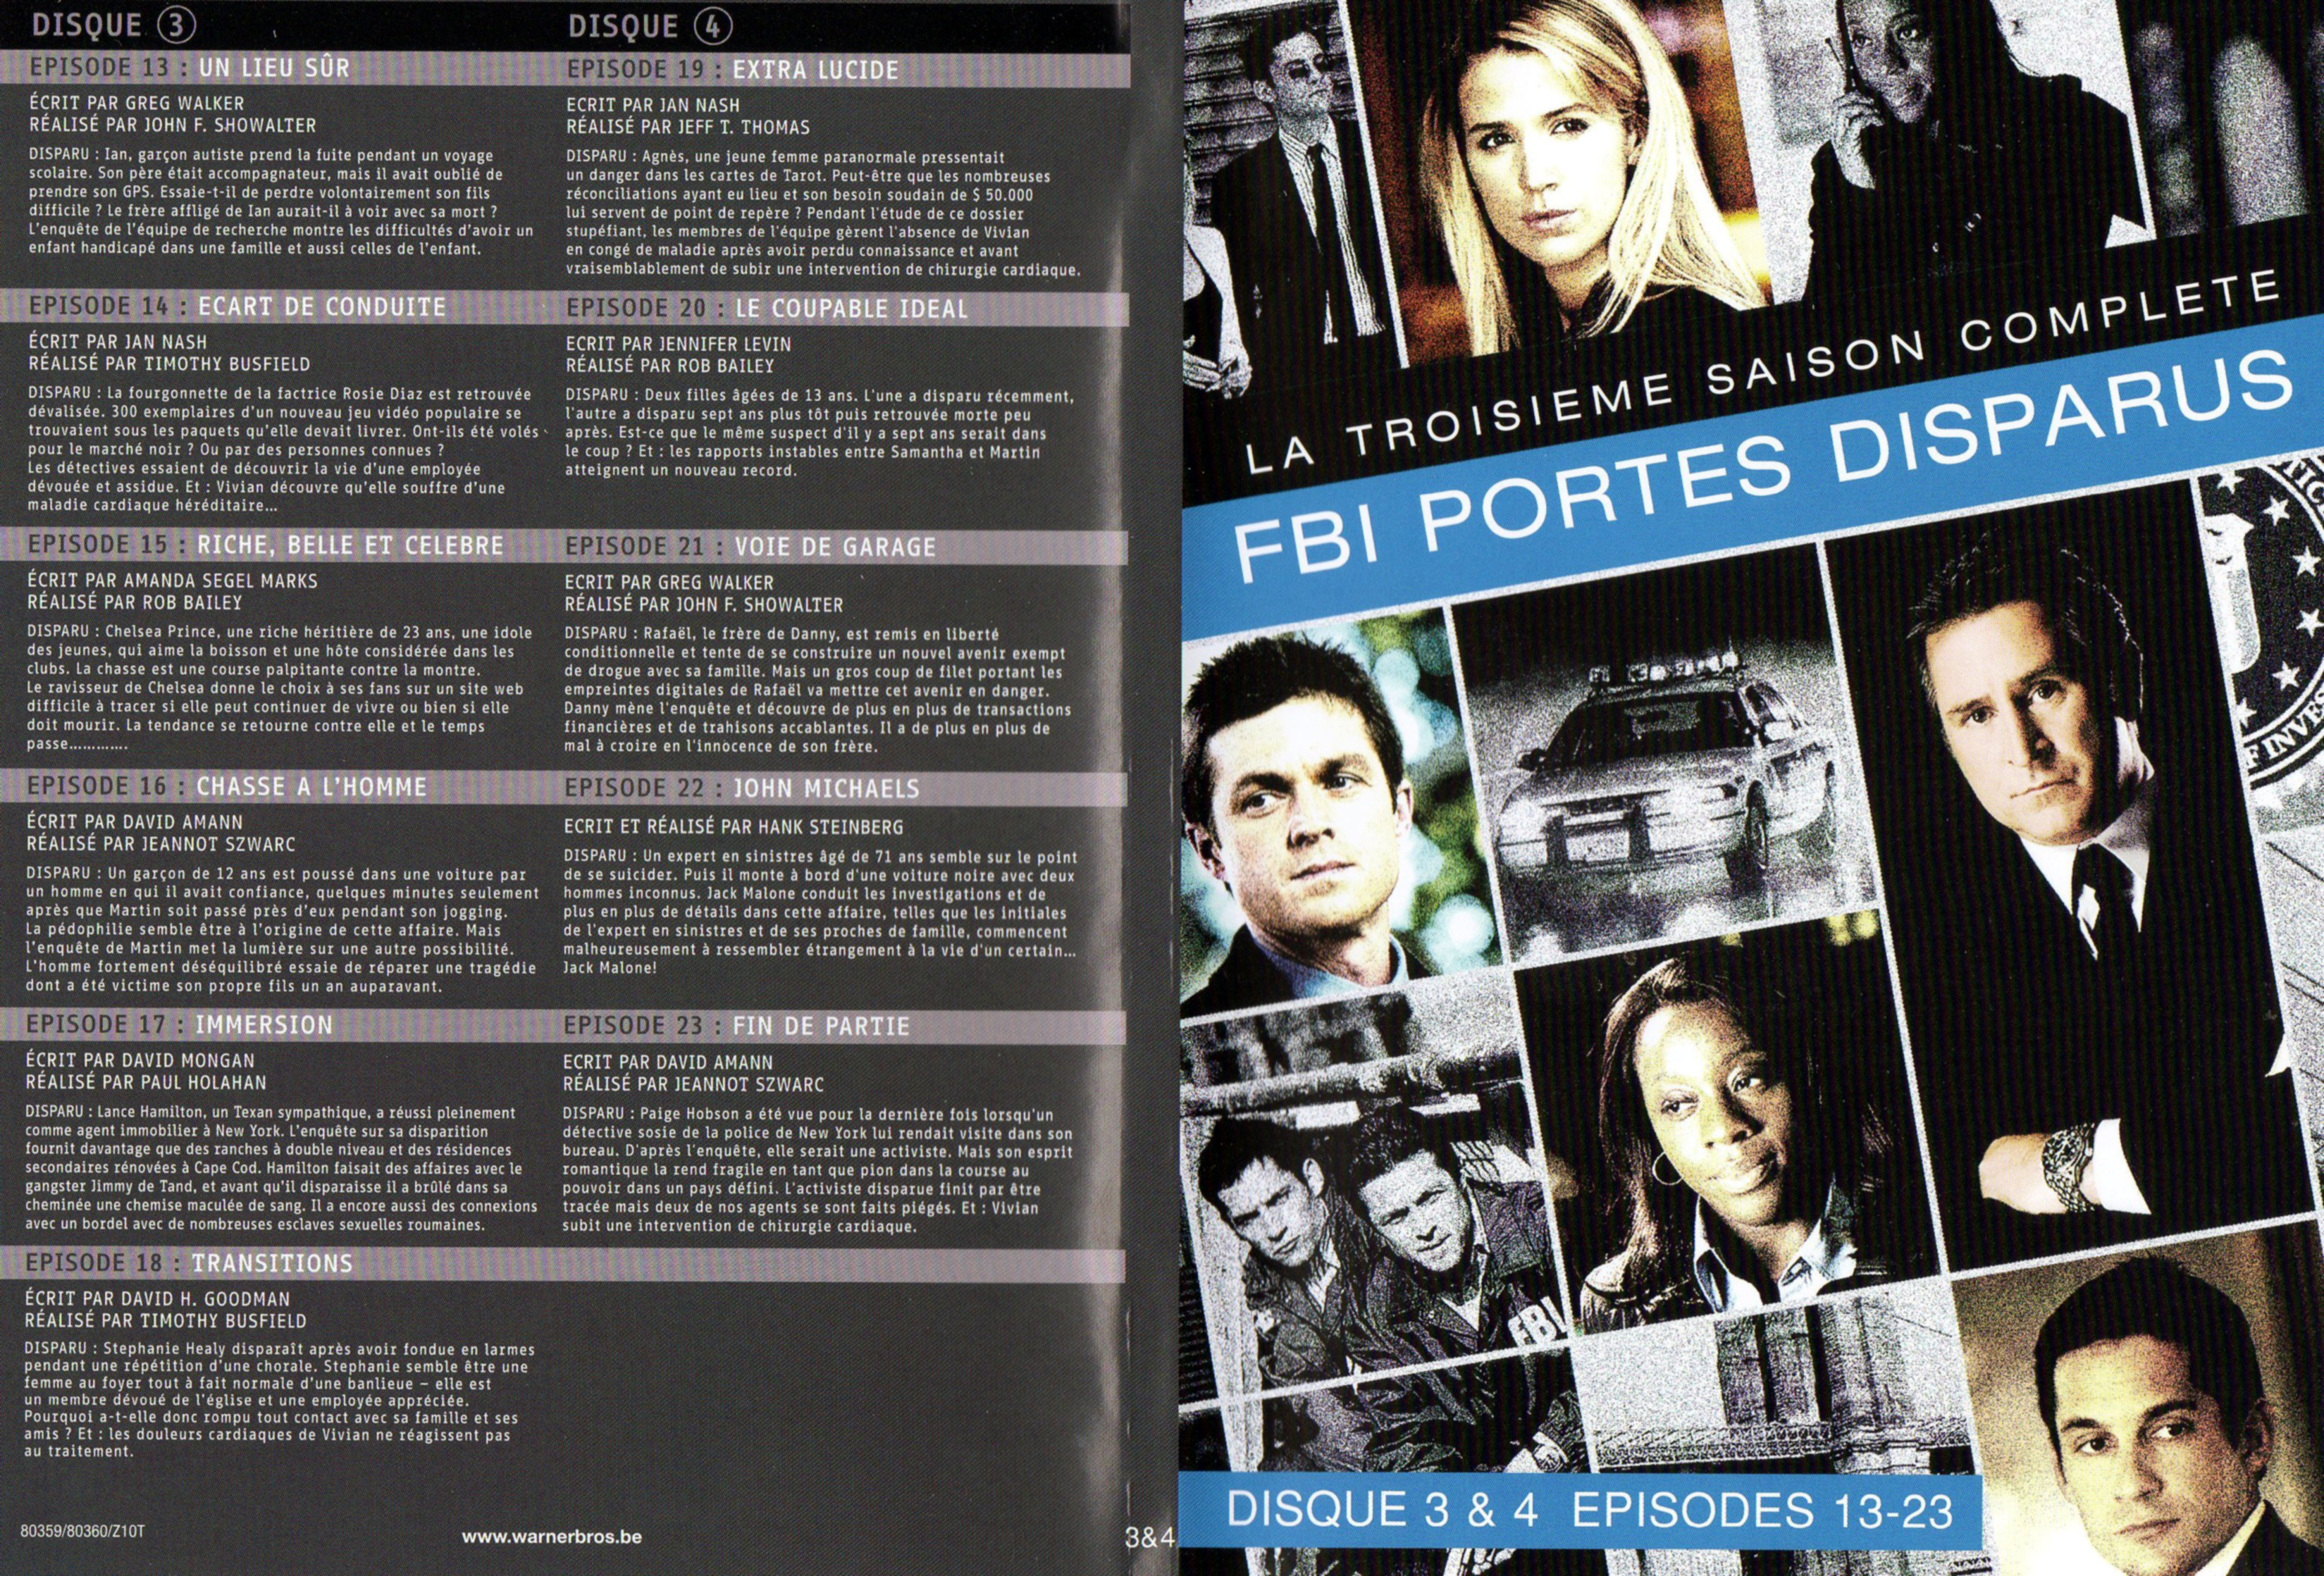 Jaquette DVD FBI Ports Disparus Saison 3 vol 2